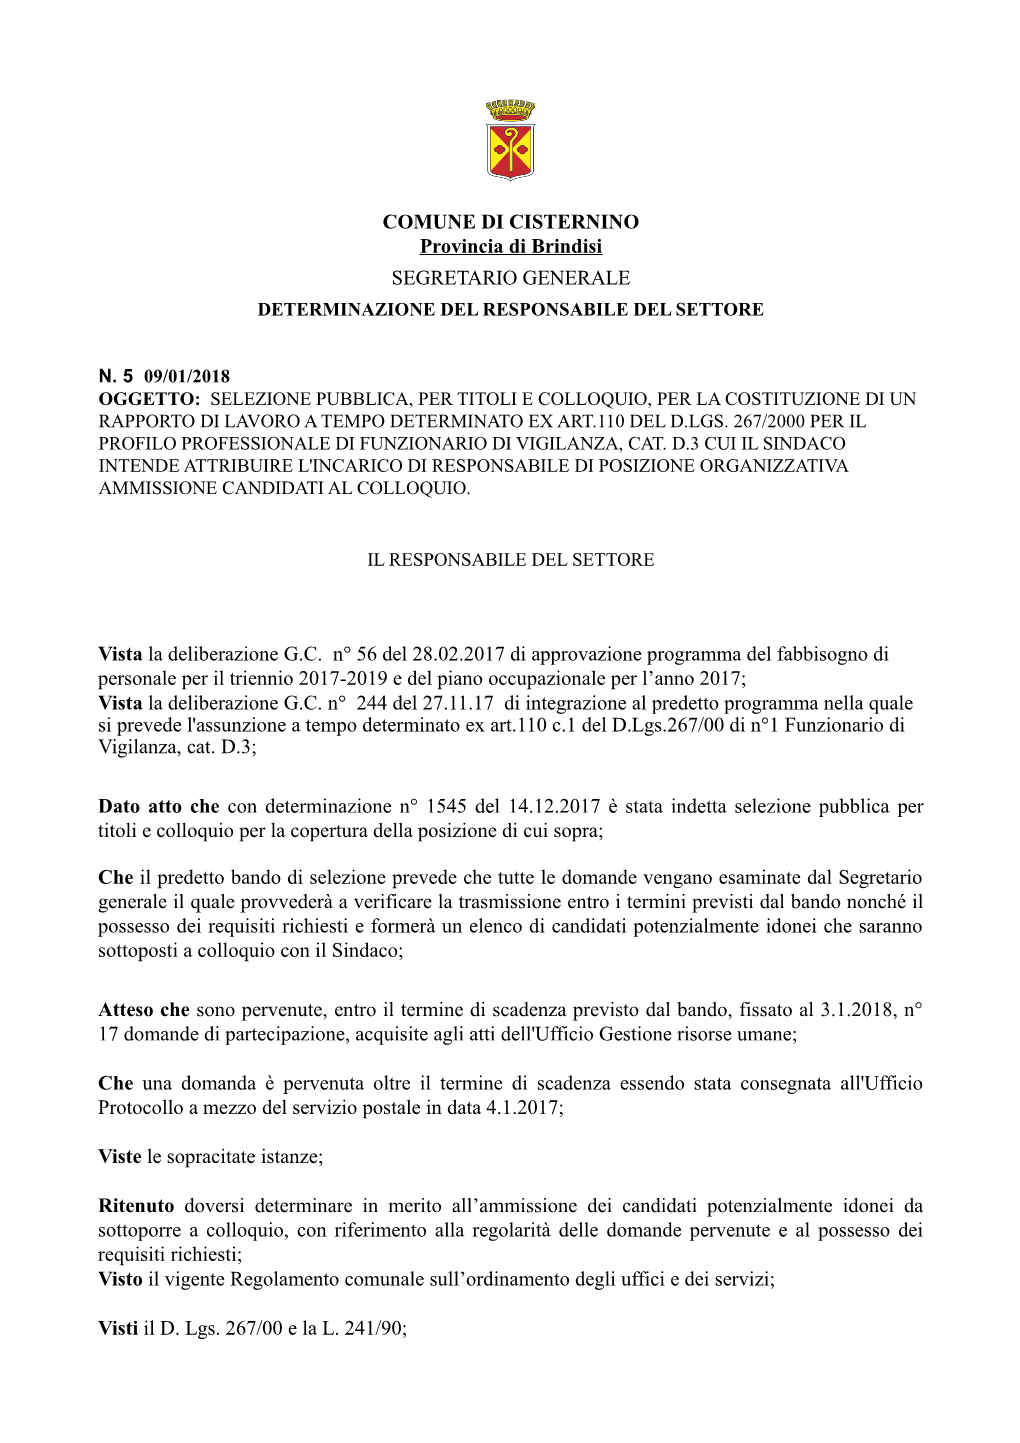 COMUNE DI CISTERNINO Provincia Di Brindisi SEGRETARIO GENERALE DETERMINAZIONE DEL RESPONSABILE DEL SETTORE